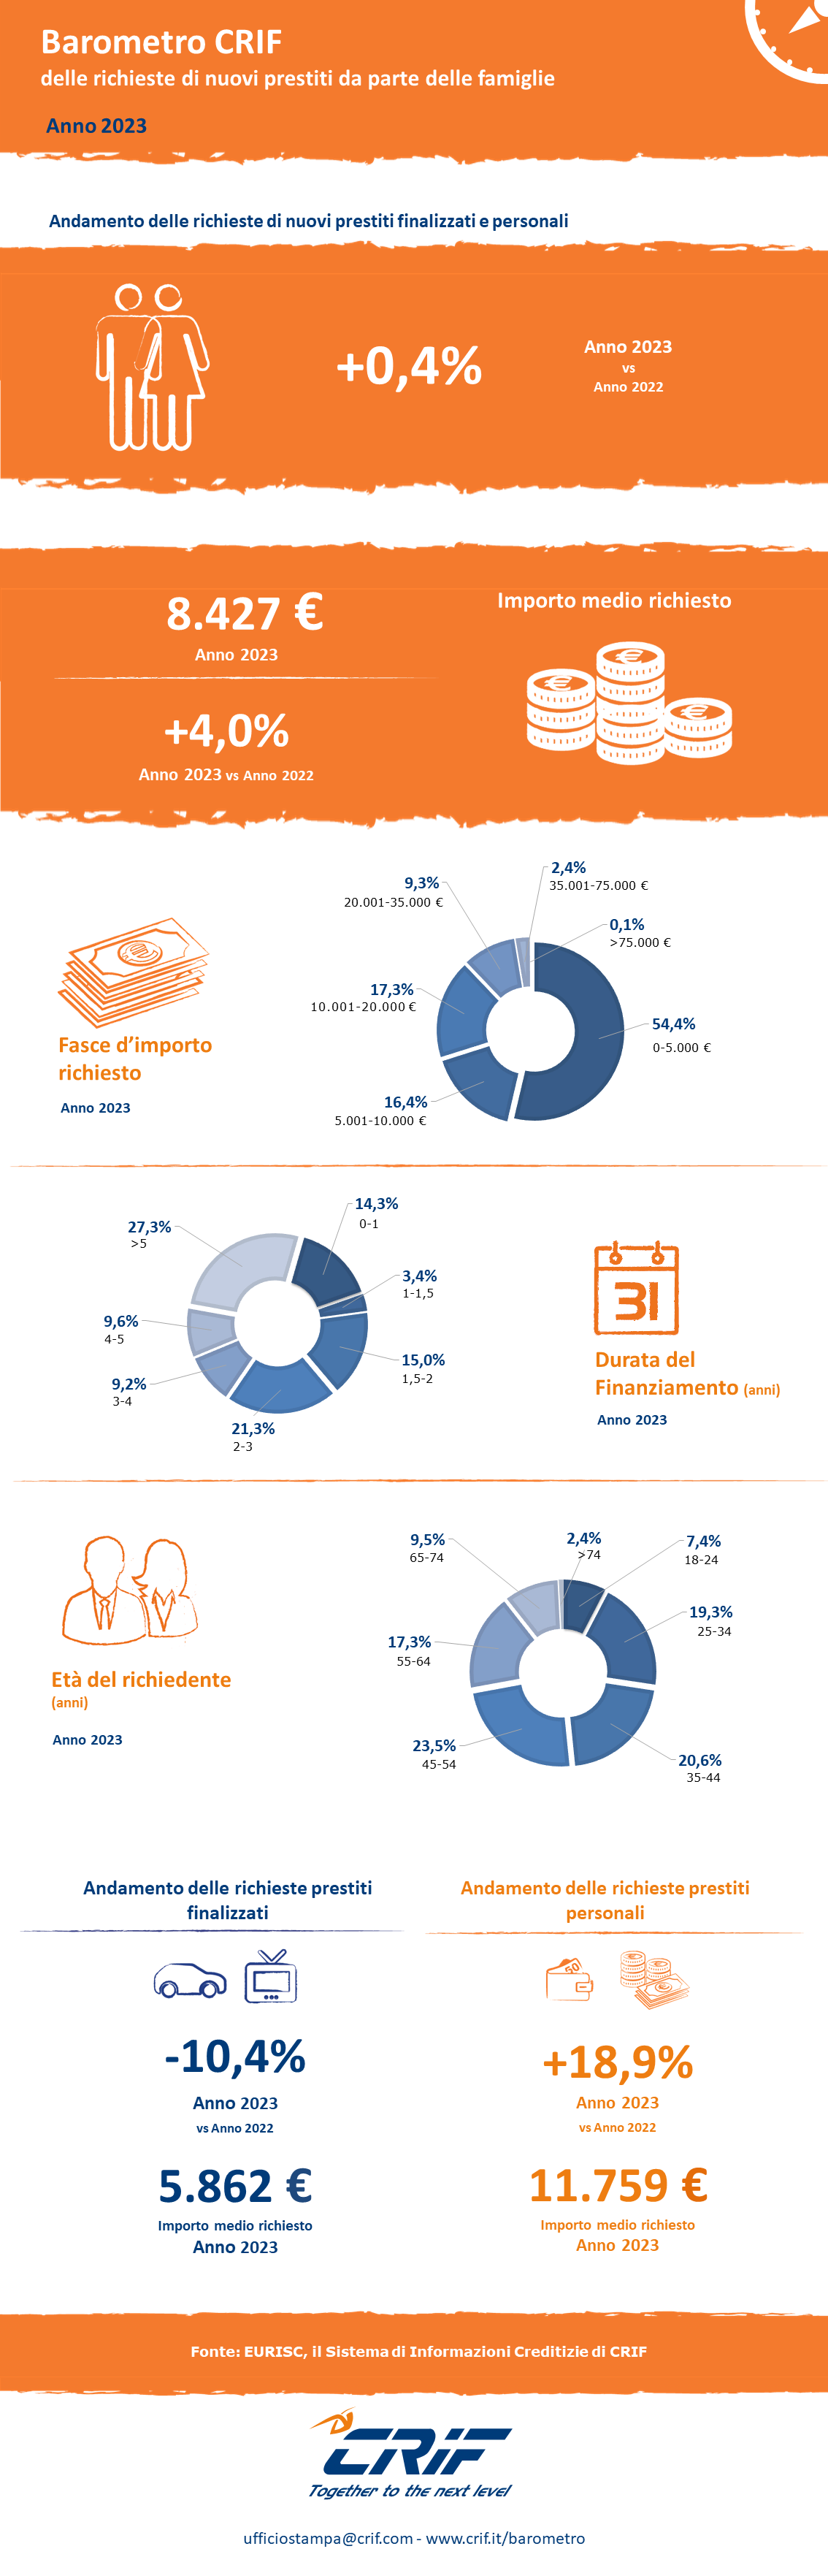 Infografica Barometro CRIF prestiti personali anno 2023